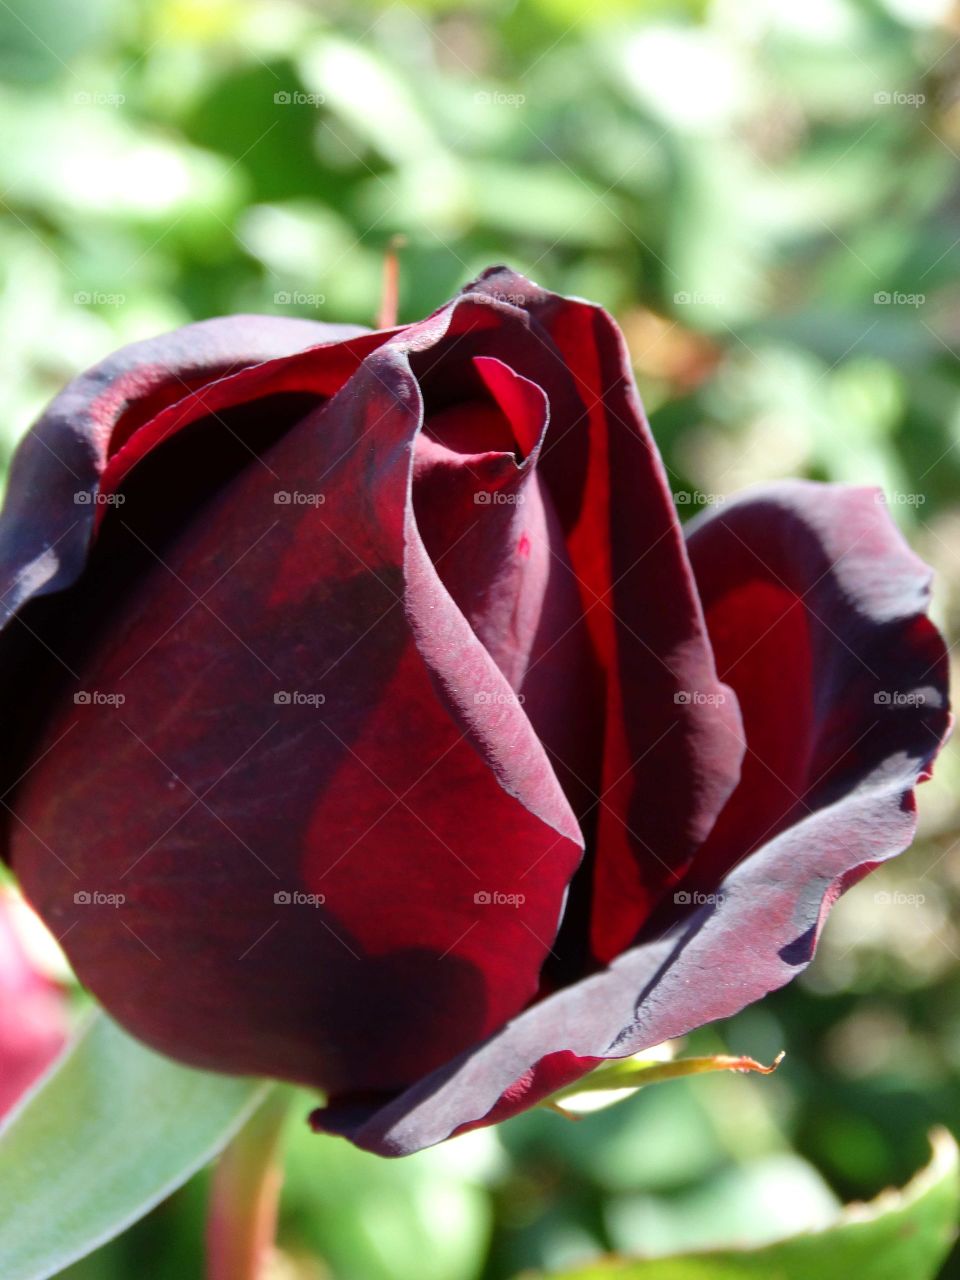 blood red rose